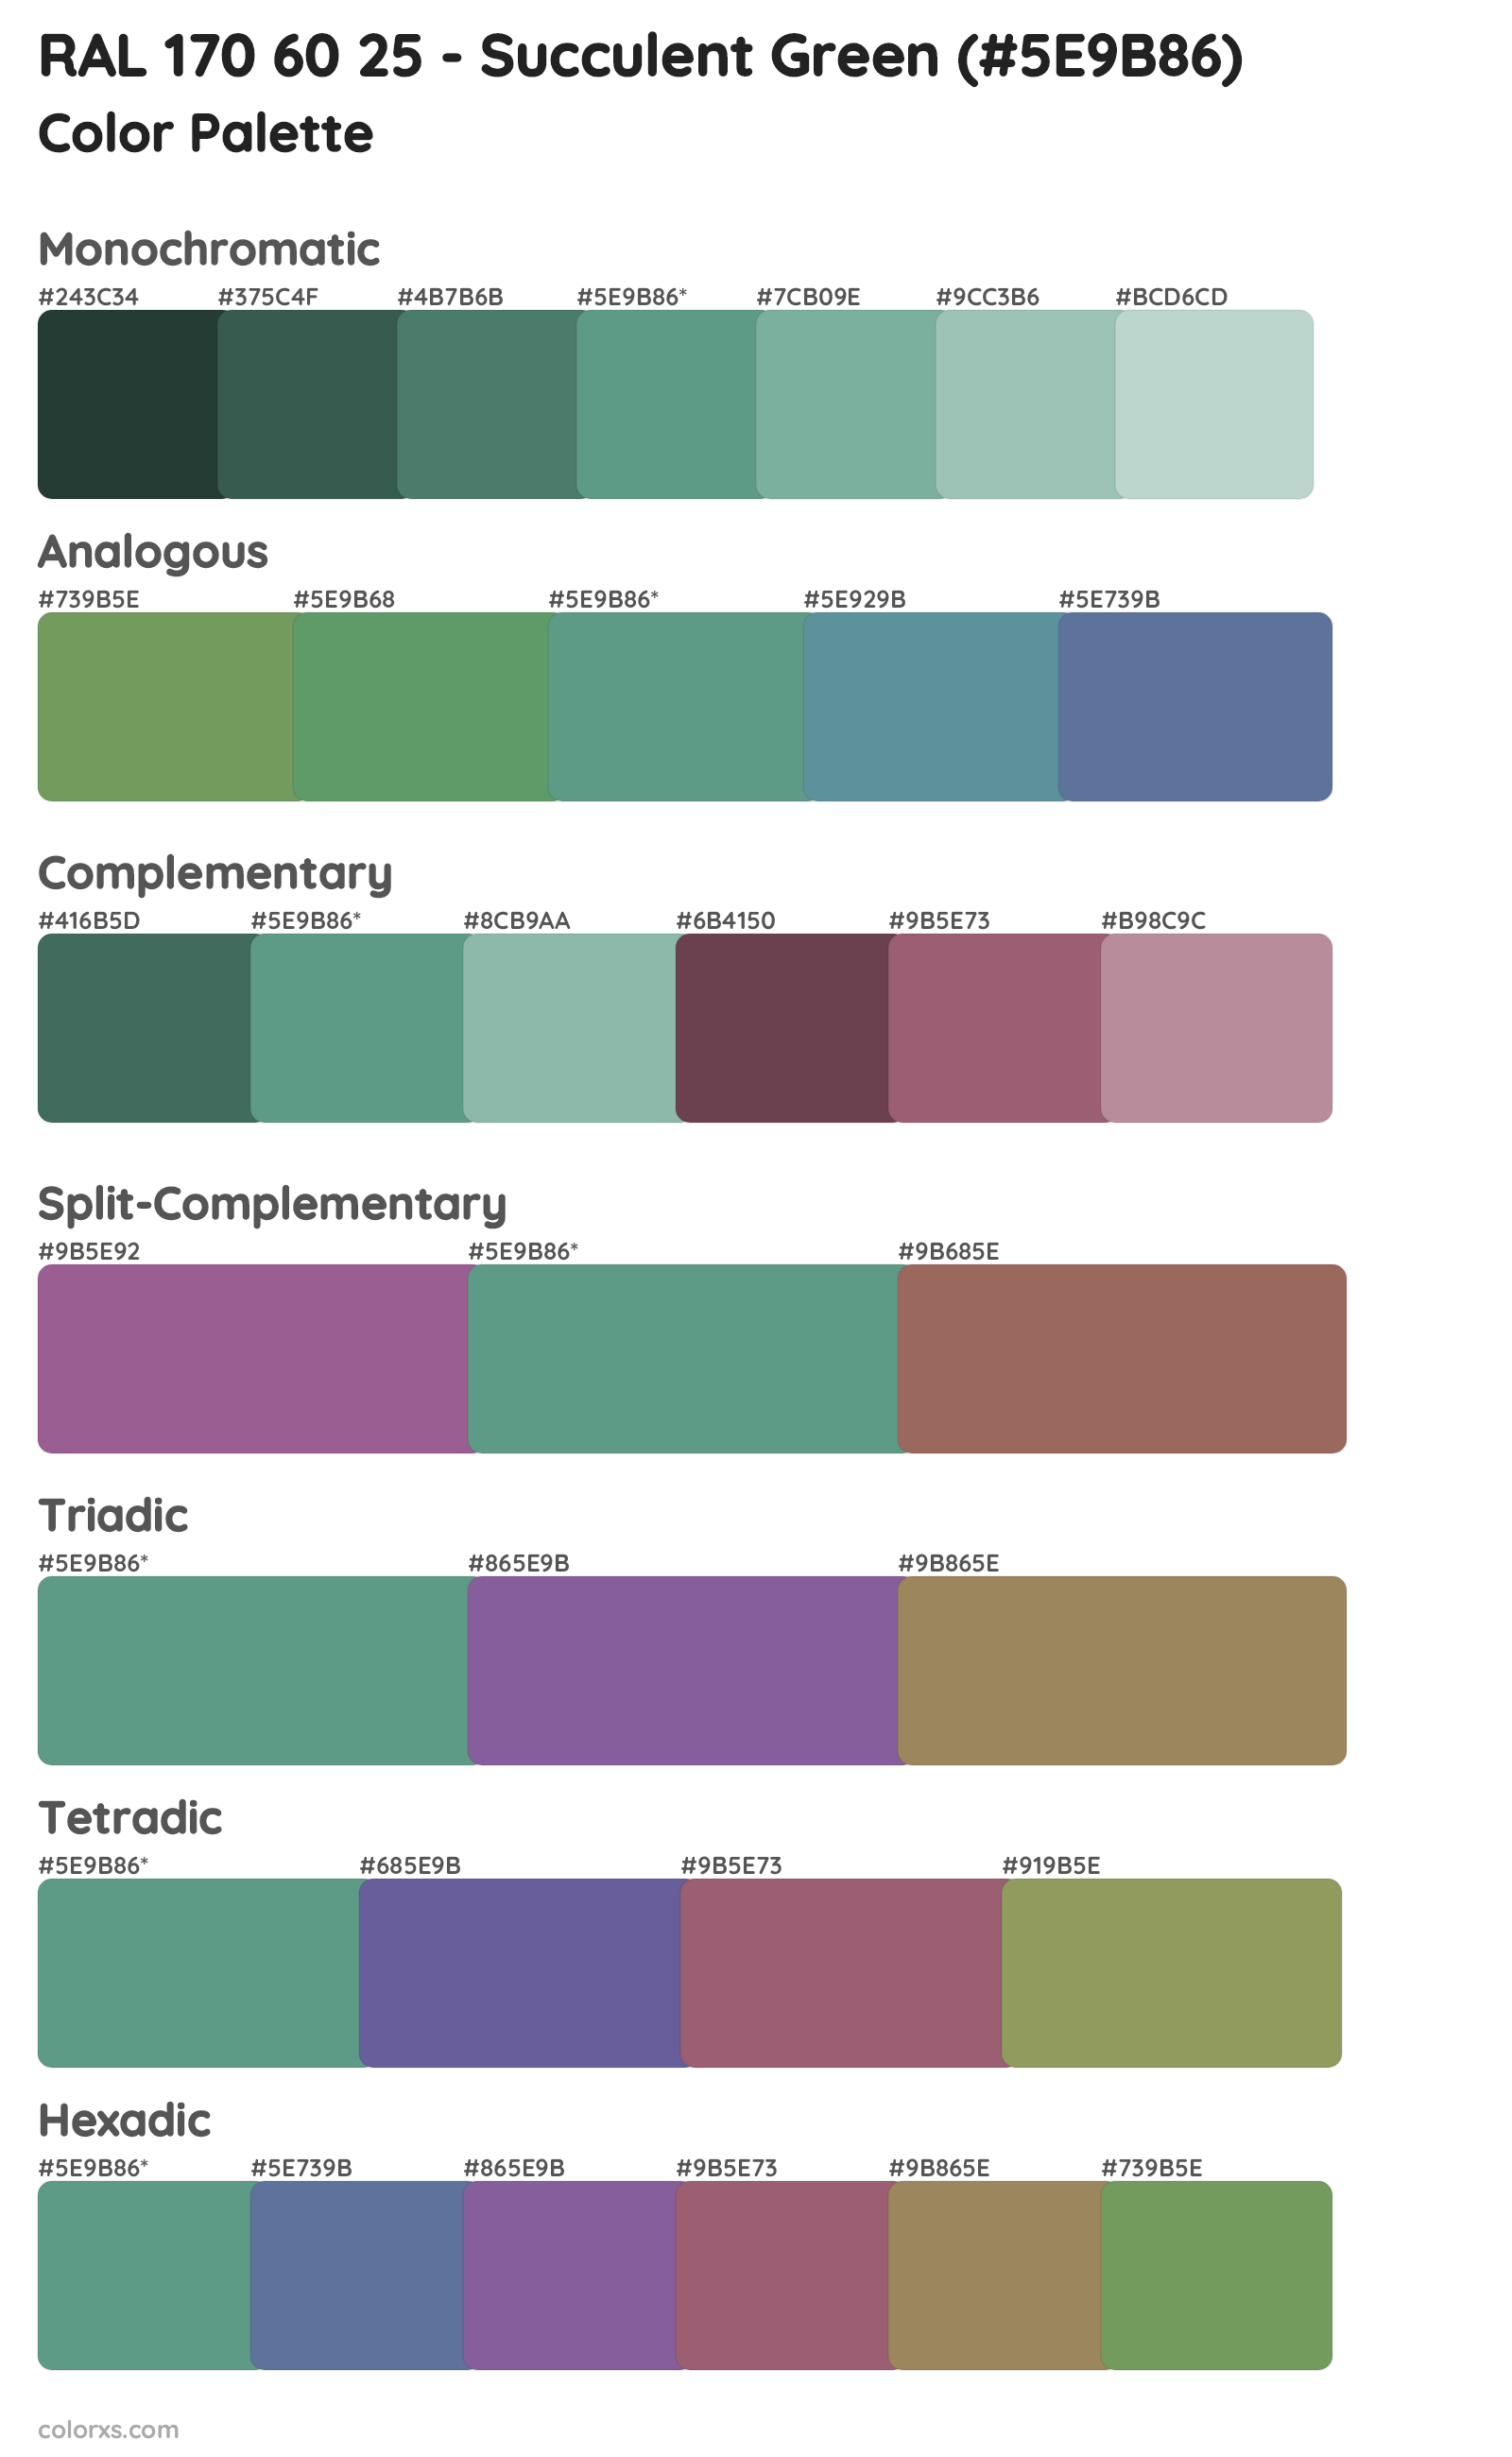 RAL 170 60 25 - Succulent Green Color Scheme Palettes